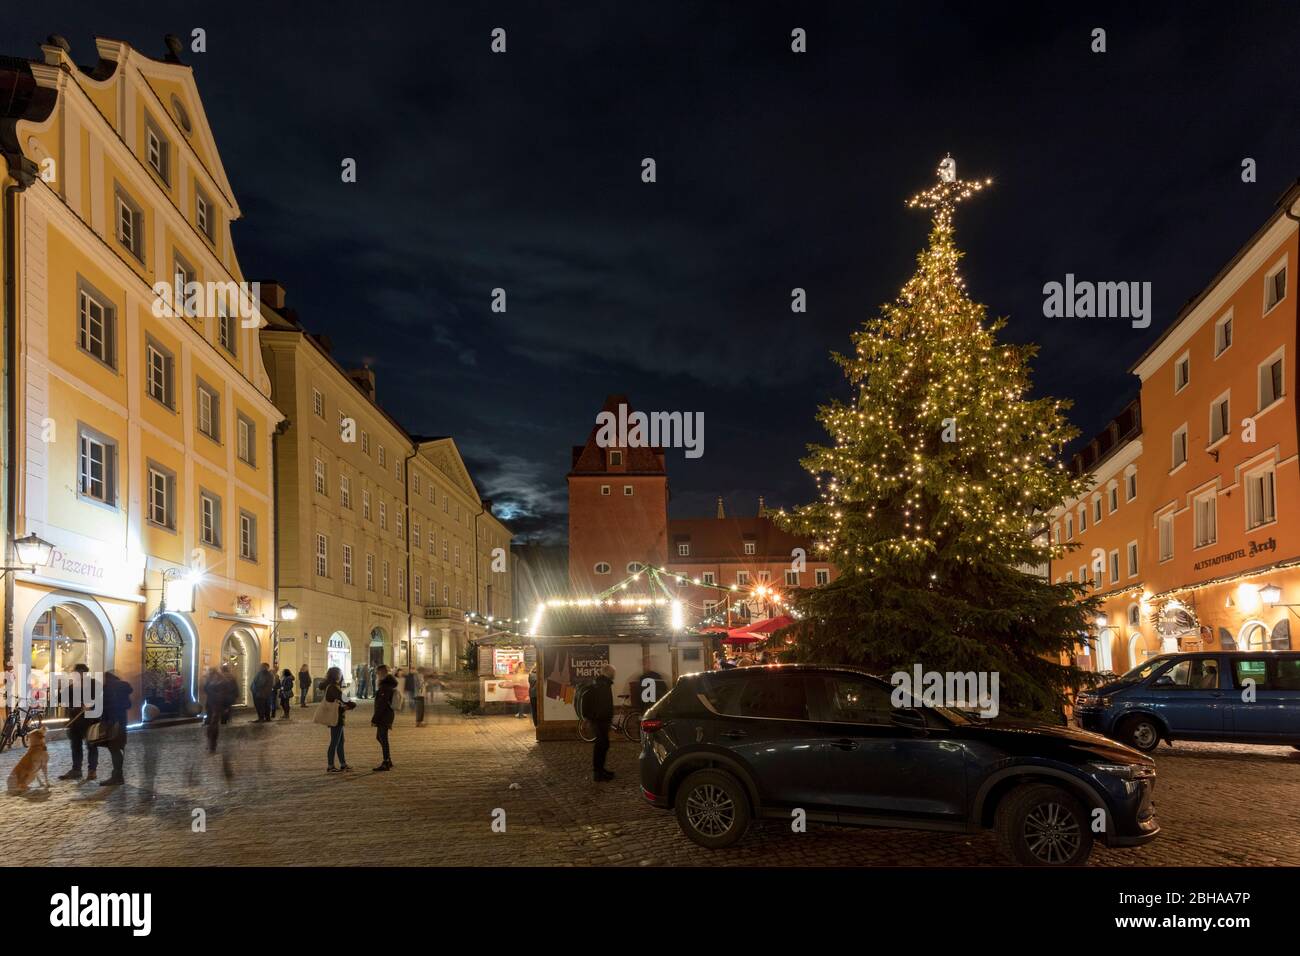 Lucrezia-Markt, Haidplatz, Christkindlmarkt, Weihnachten, Regensburg, Oberpfalz, Bayern, Deutschland, Europa, Stock Photo